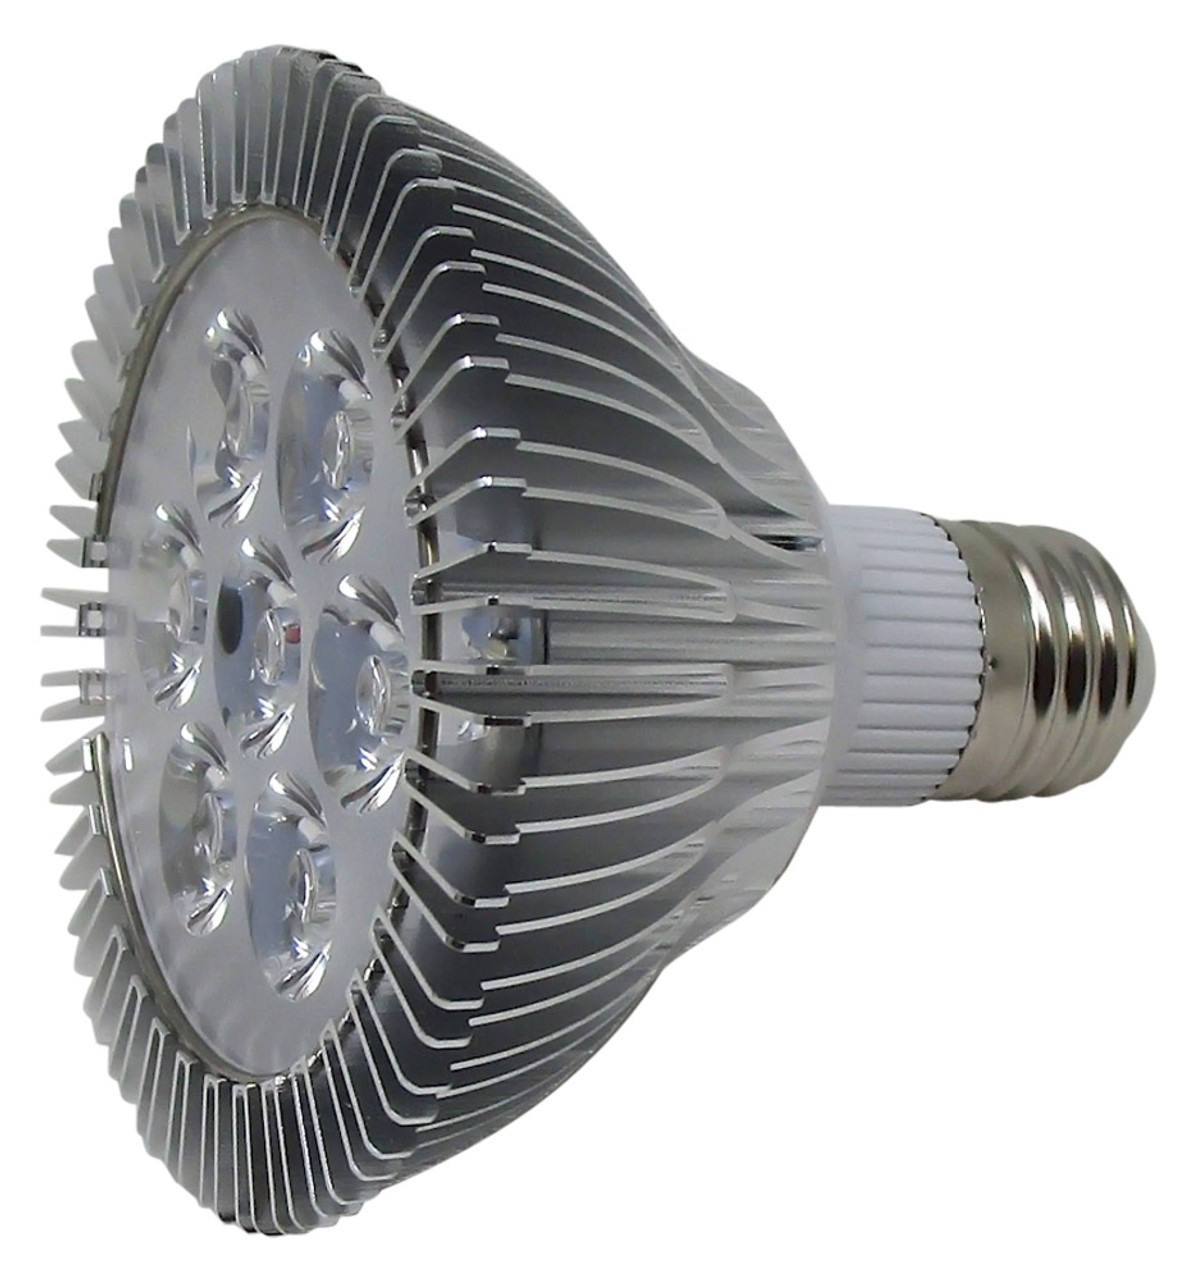 7W LED Ampoule UV A19 Ultraviolet E27 365nm Lamp Base pour